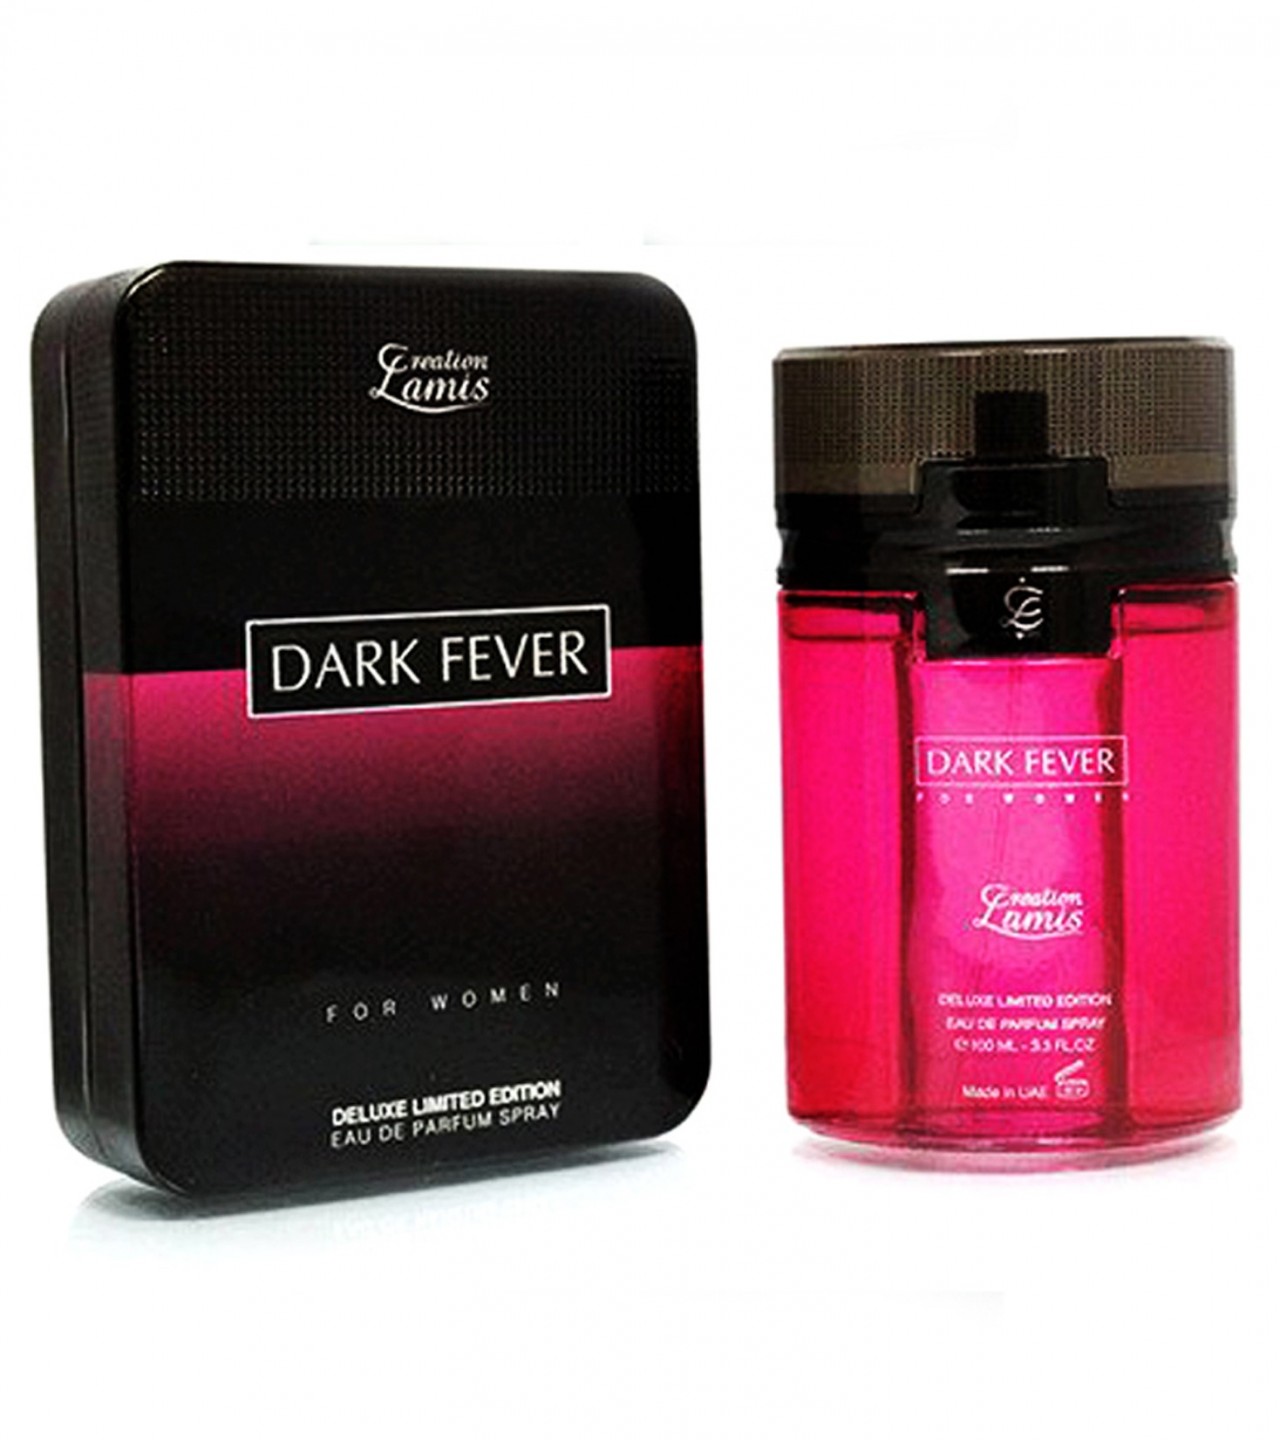 Creation Lamis Dark Fever Perfume For Women - 100 ml